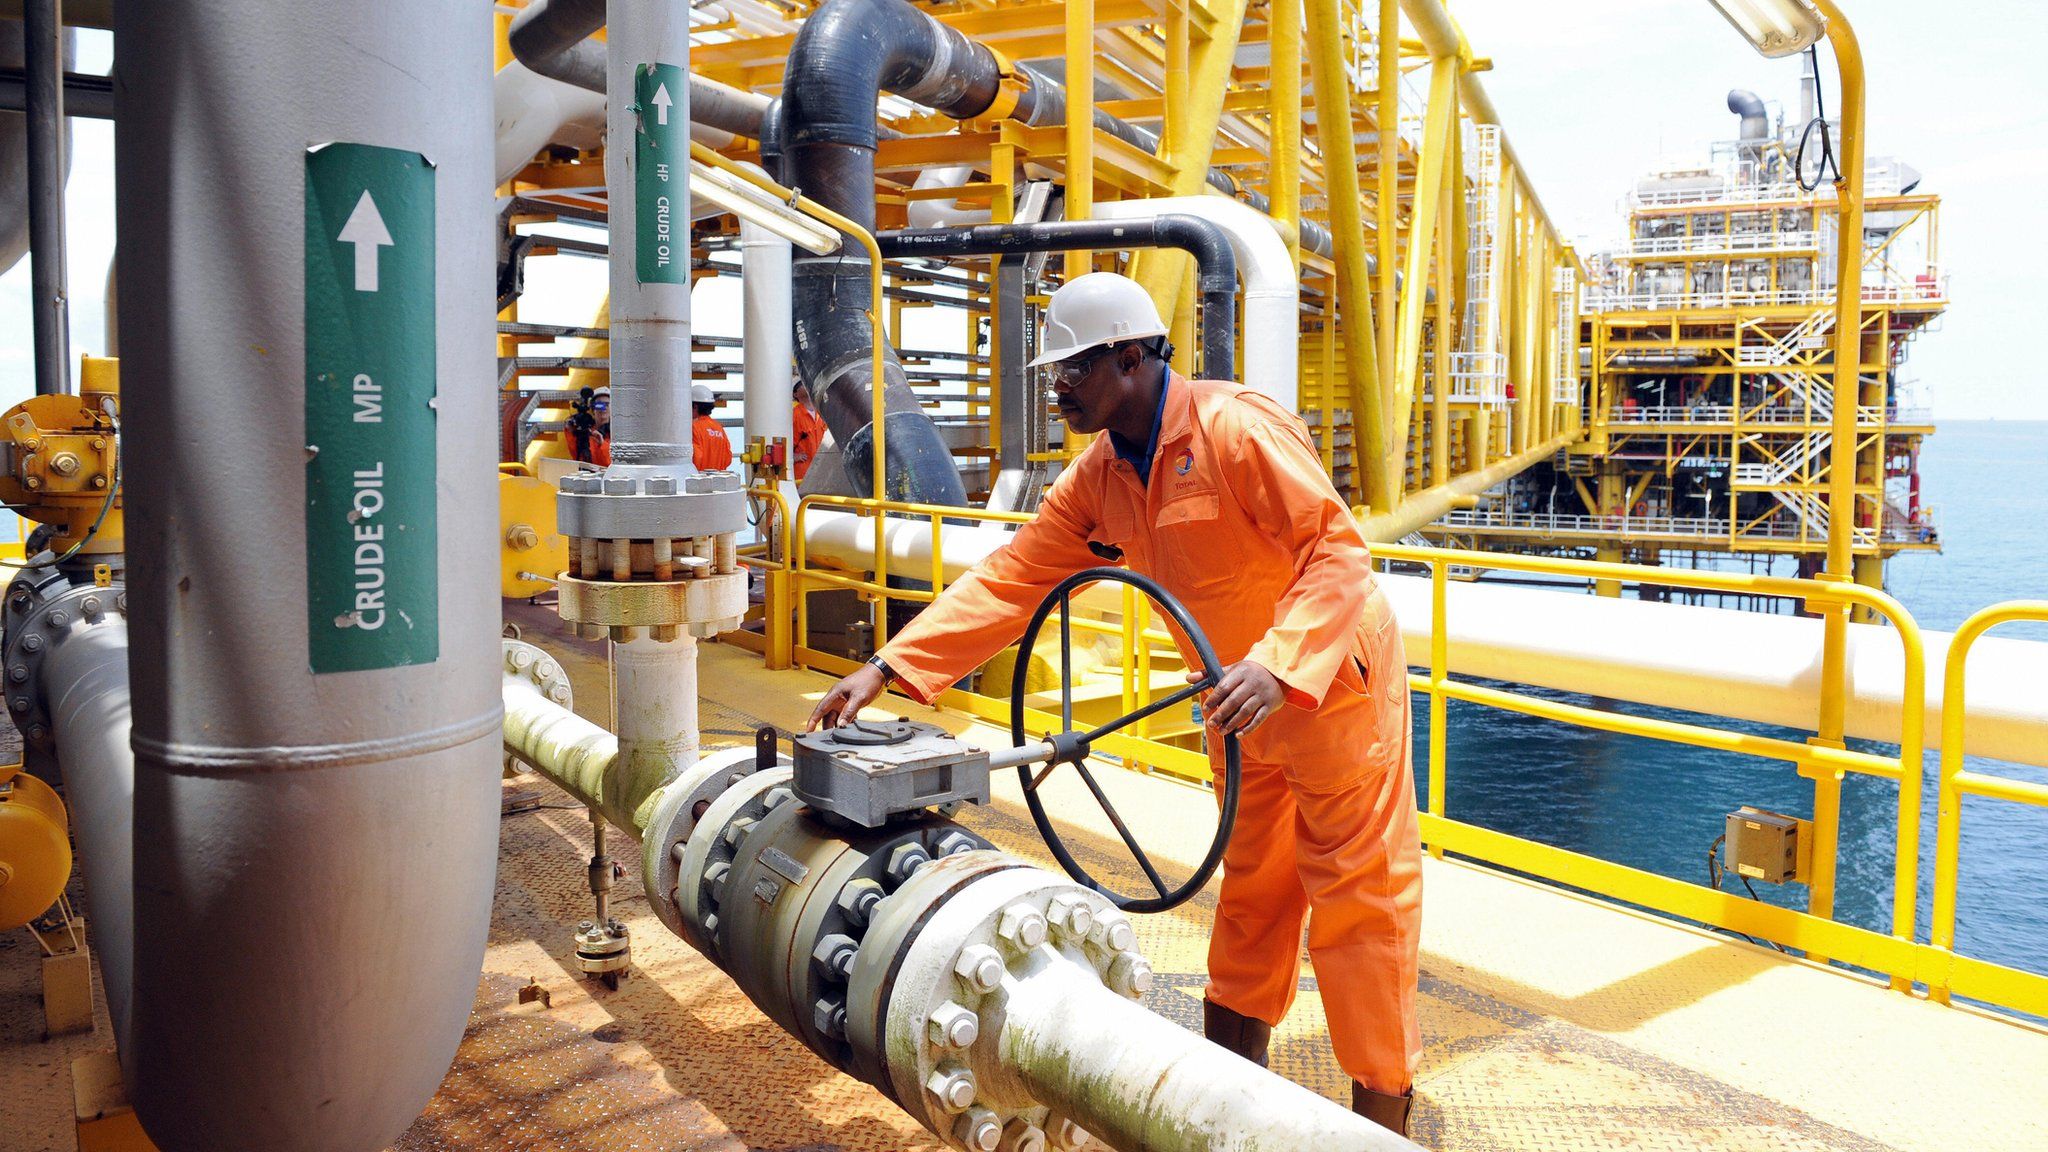 Worker on an oil platform in Niger Delta